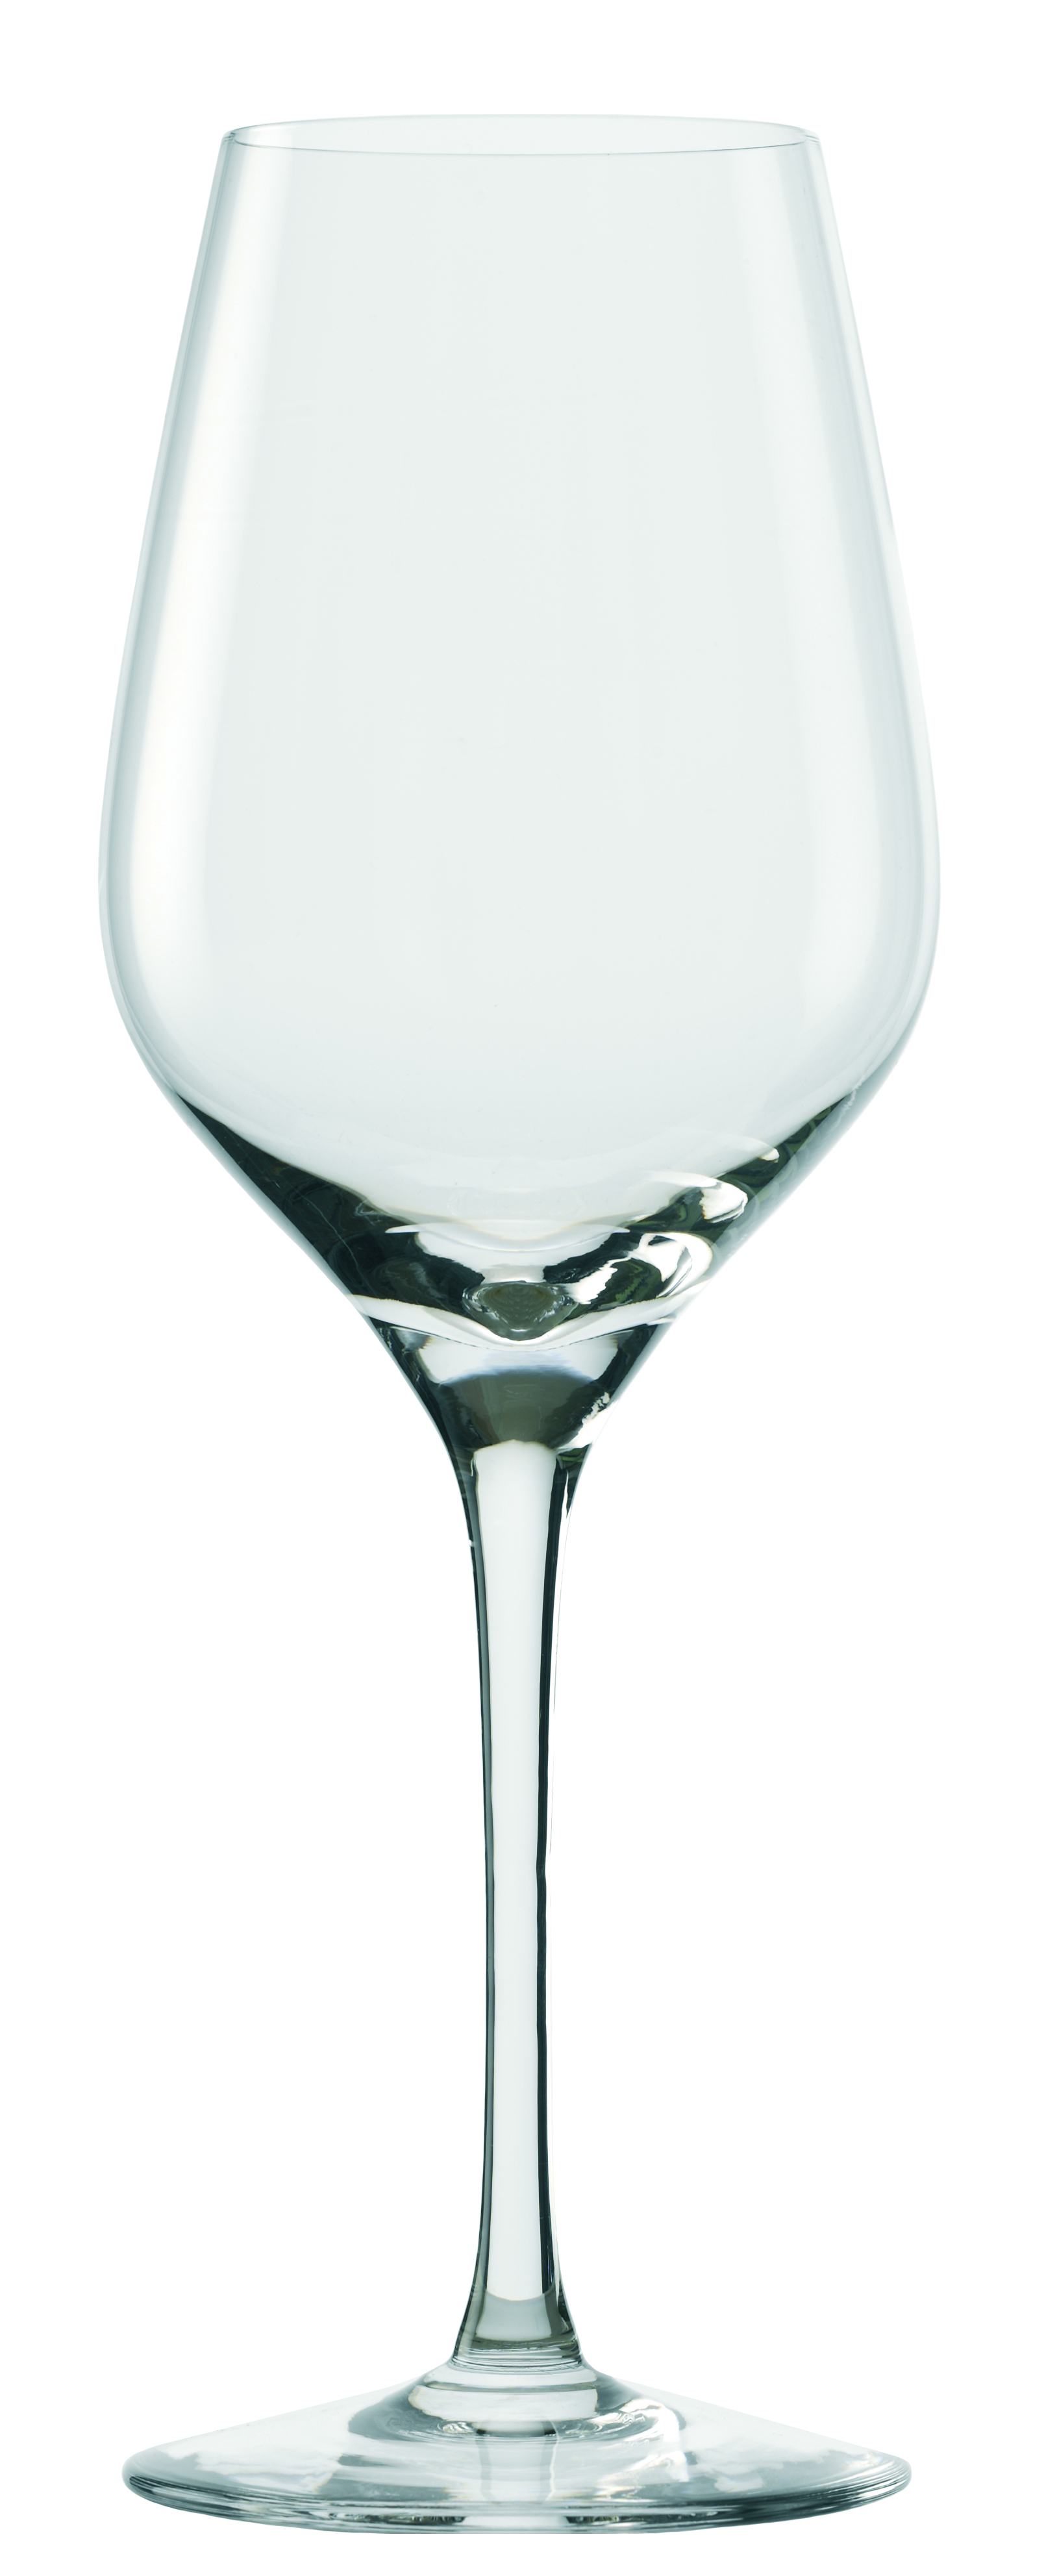 White wine glass Exquisit Royal, Stölzle Lausitz - 420ml (6 pcs.)